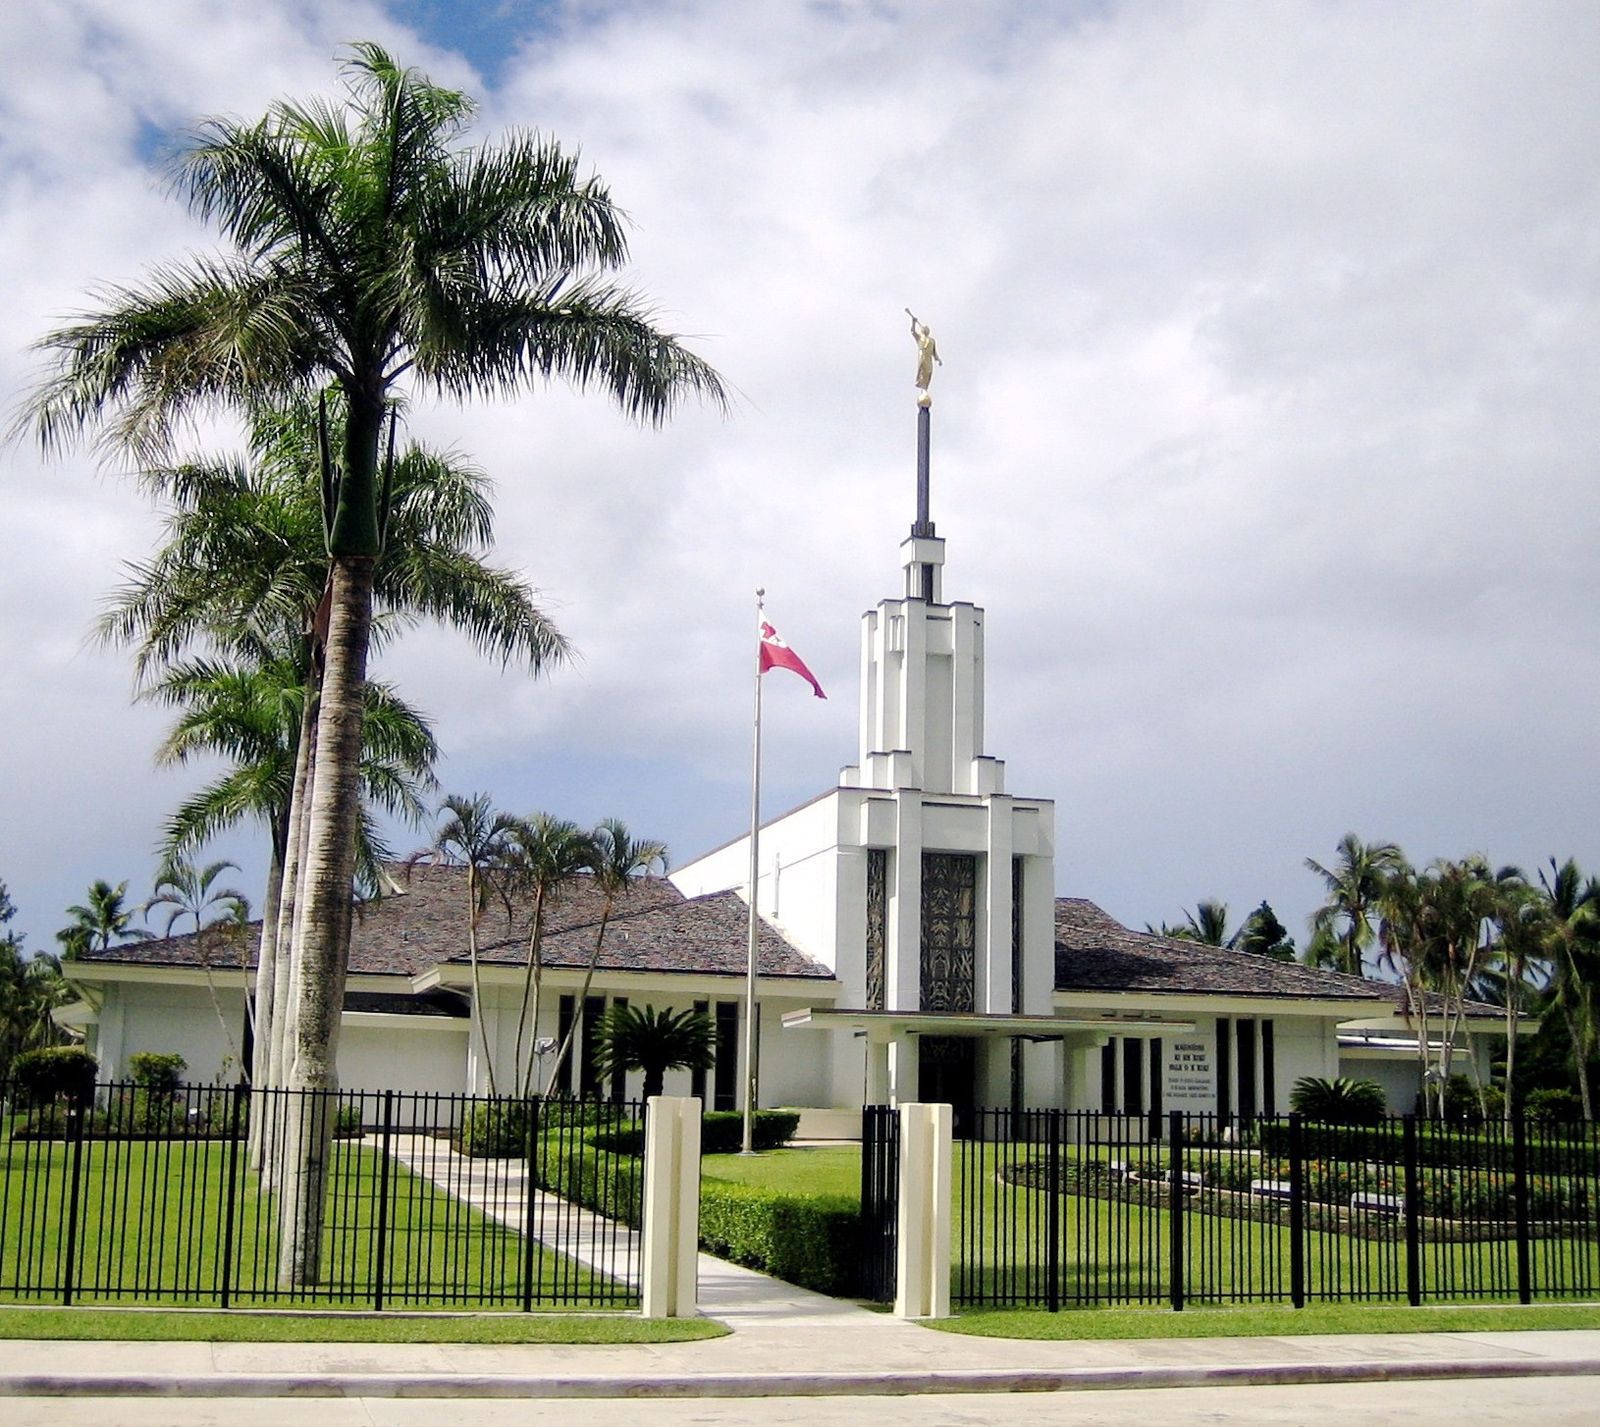 The Nuku‘alofa Tonga Temple, including the entrance and scenery.